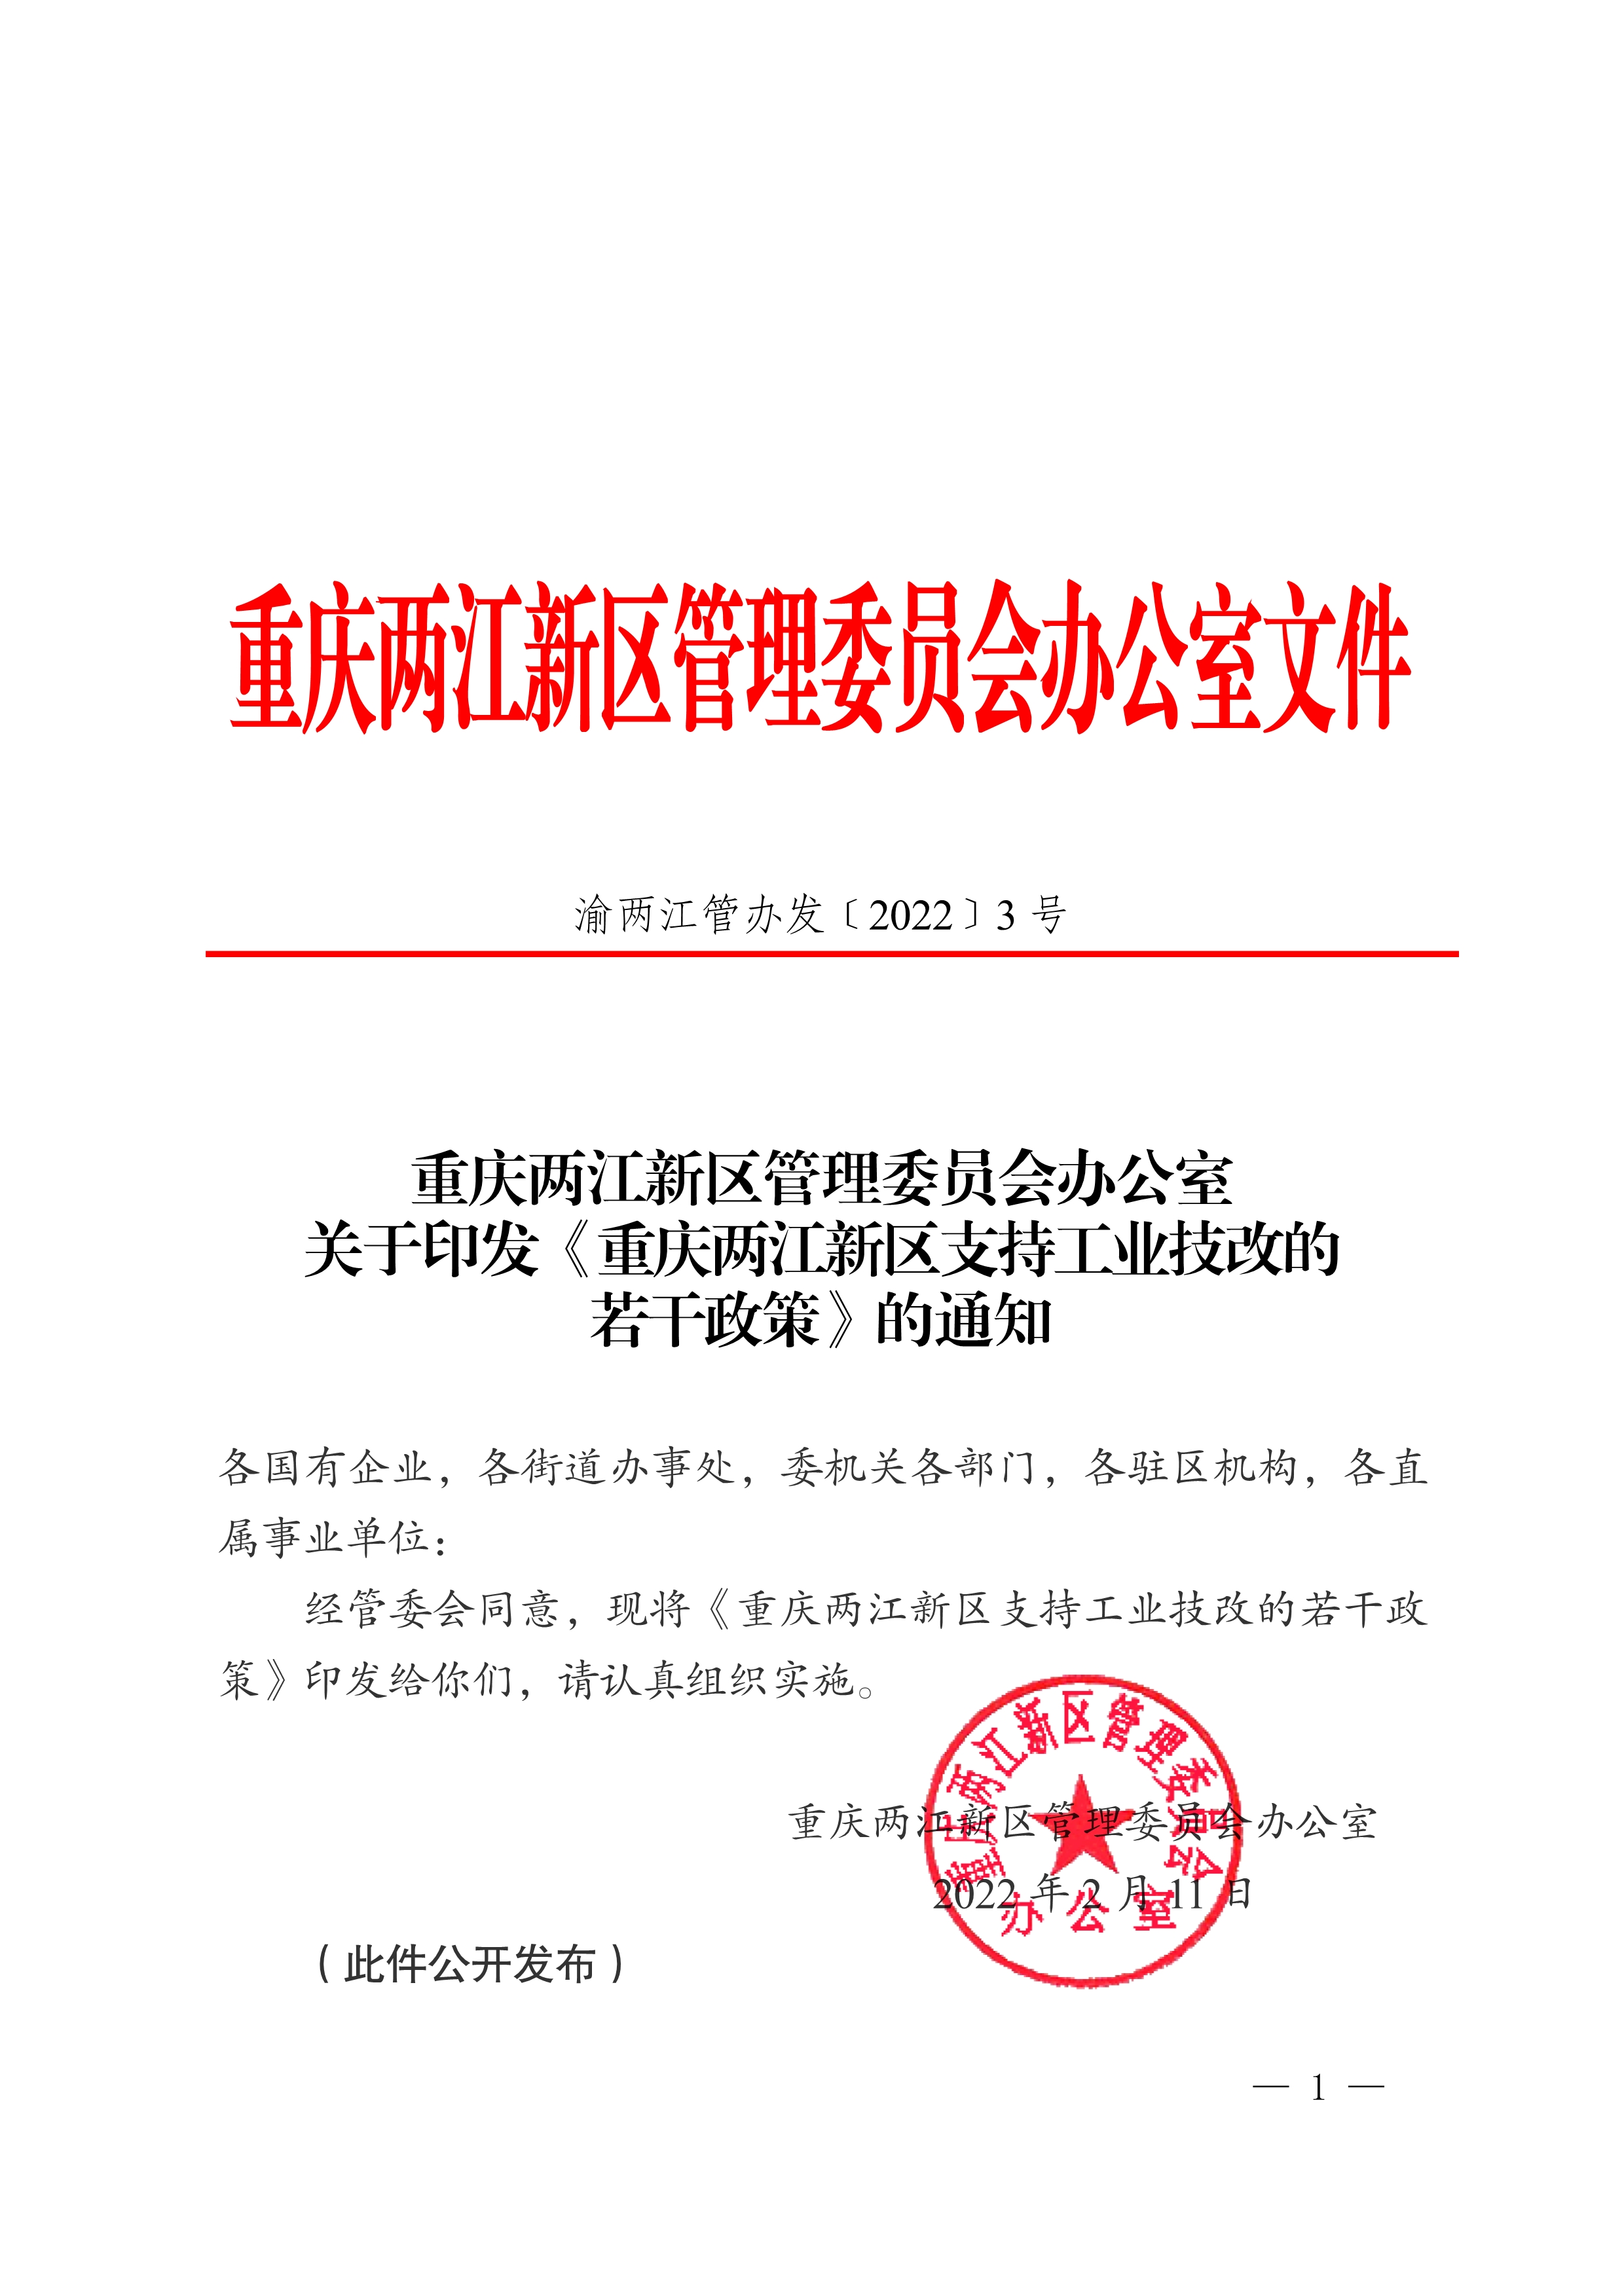 【工业技改】重庆两江新区管理委员会办公室关于印发《重庆两江新区支持工业技改的若干政策》的通知